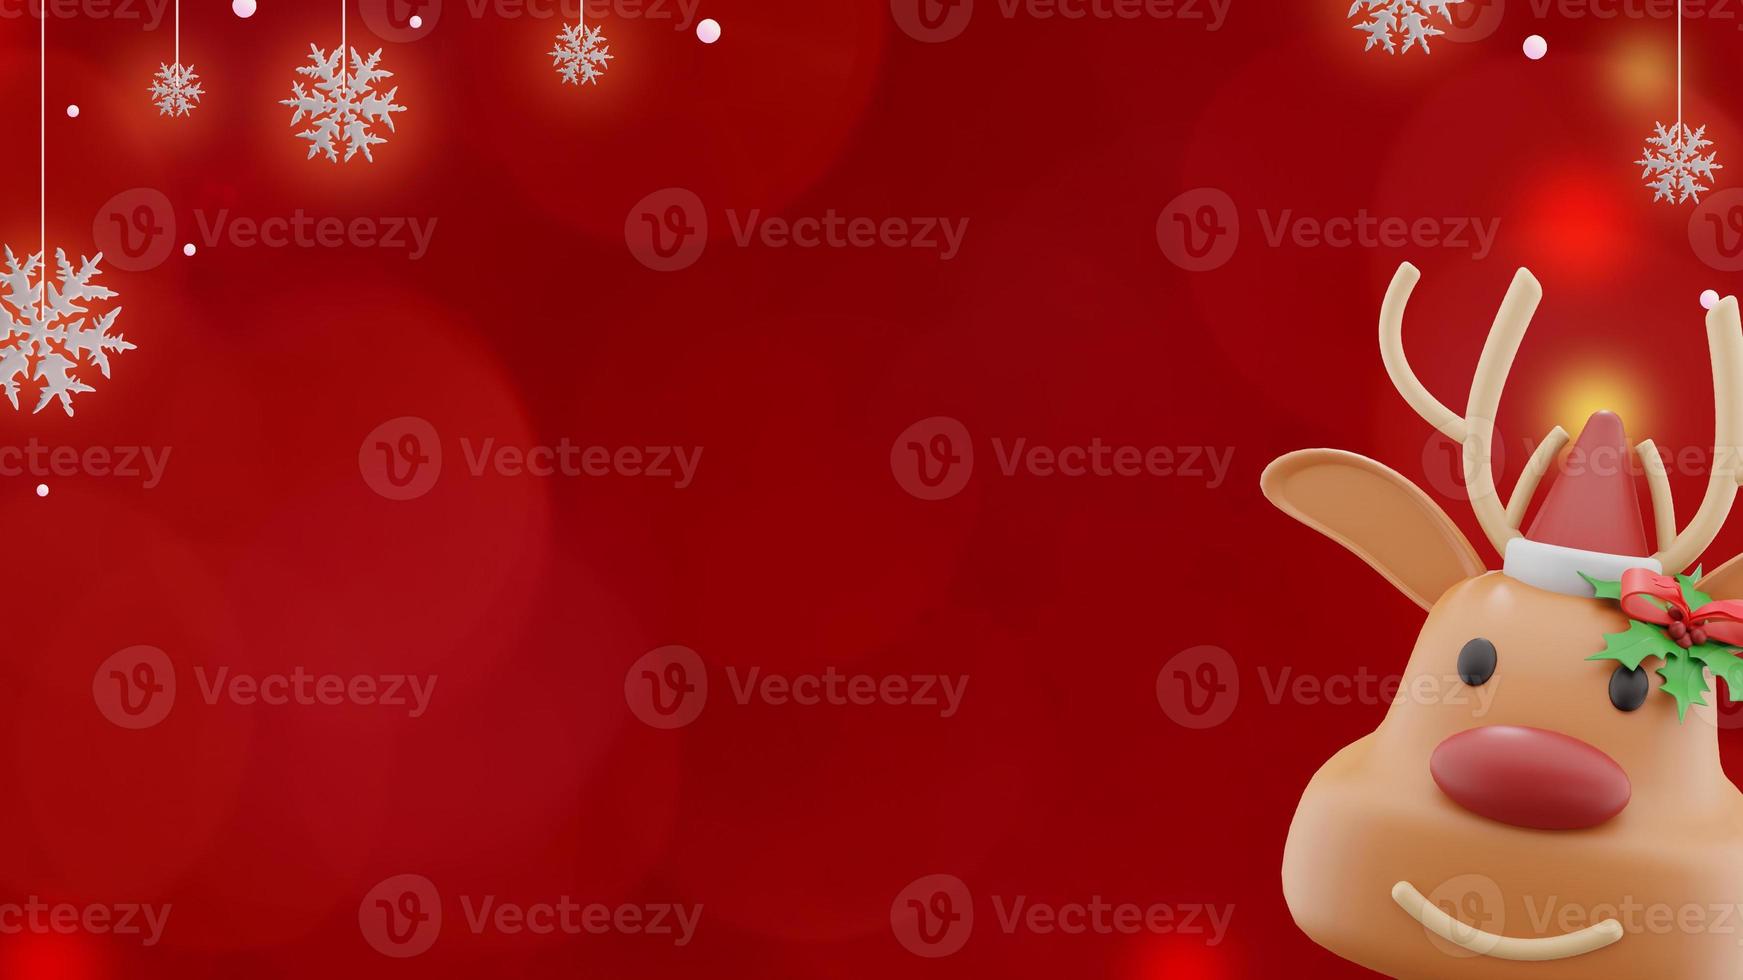 weihnachtsbanner auf rotem hintergrund mit weihnachtsmann-rentieren und schneeflocken im kopienraum foto